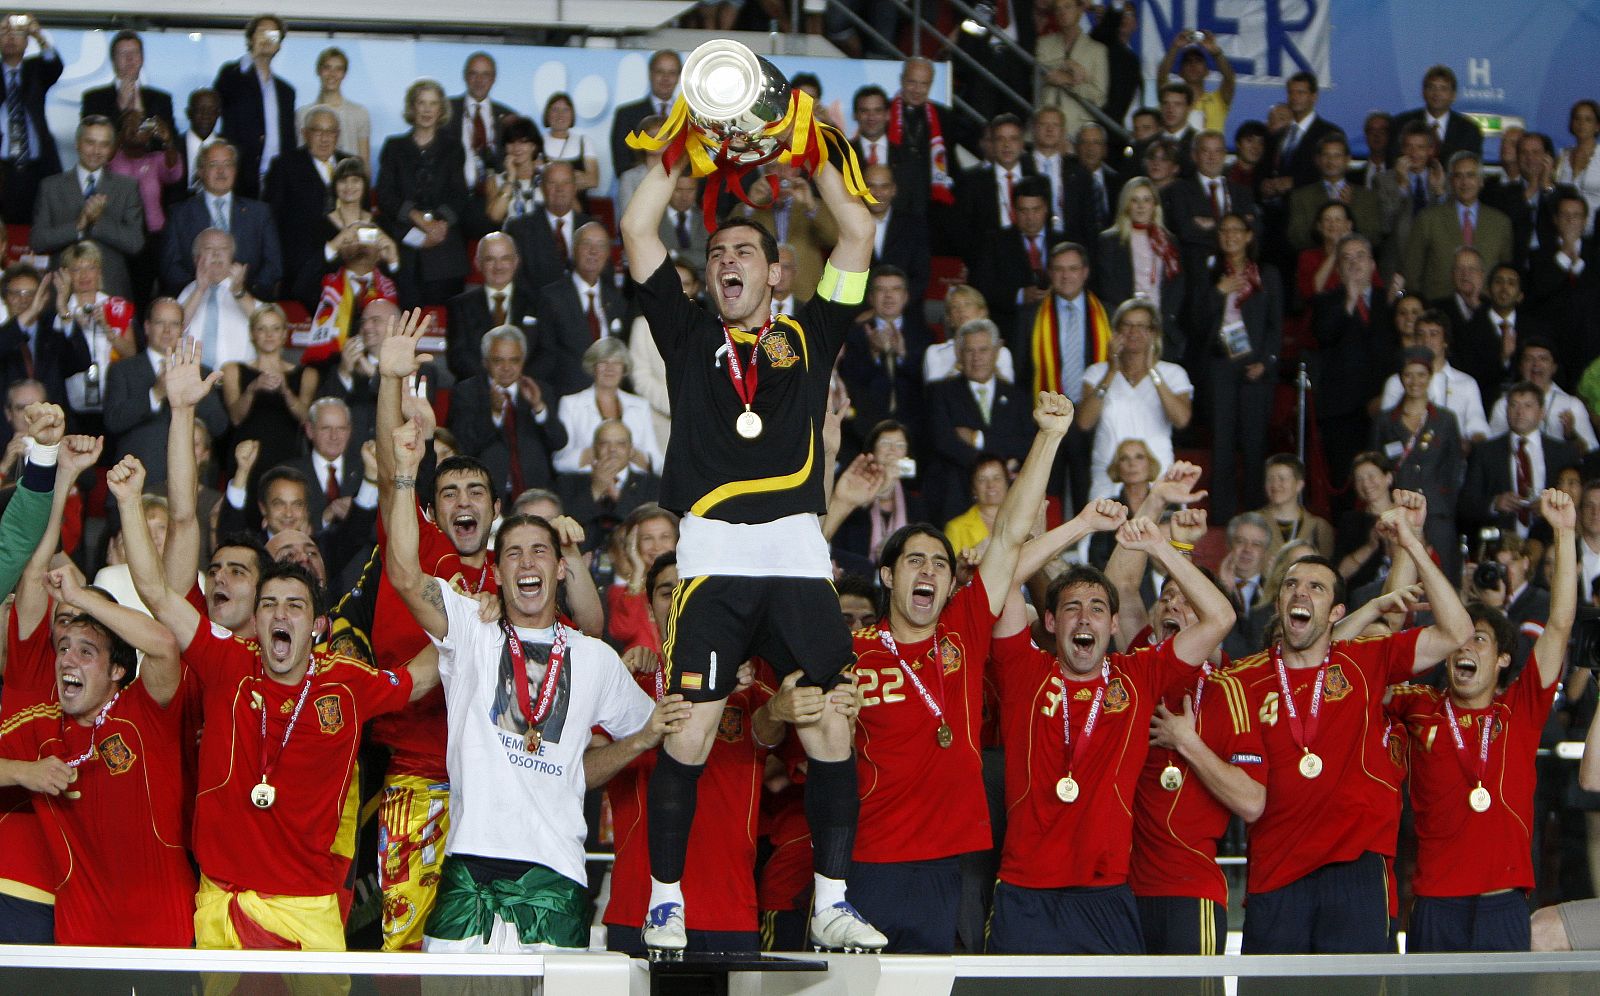 Iker Casillas levanta el trofeo de la Eurocopa 2008 ante sus compañeros de equipo.